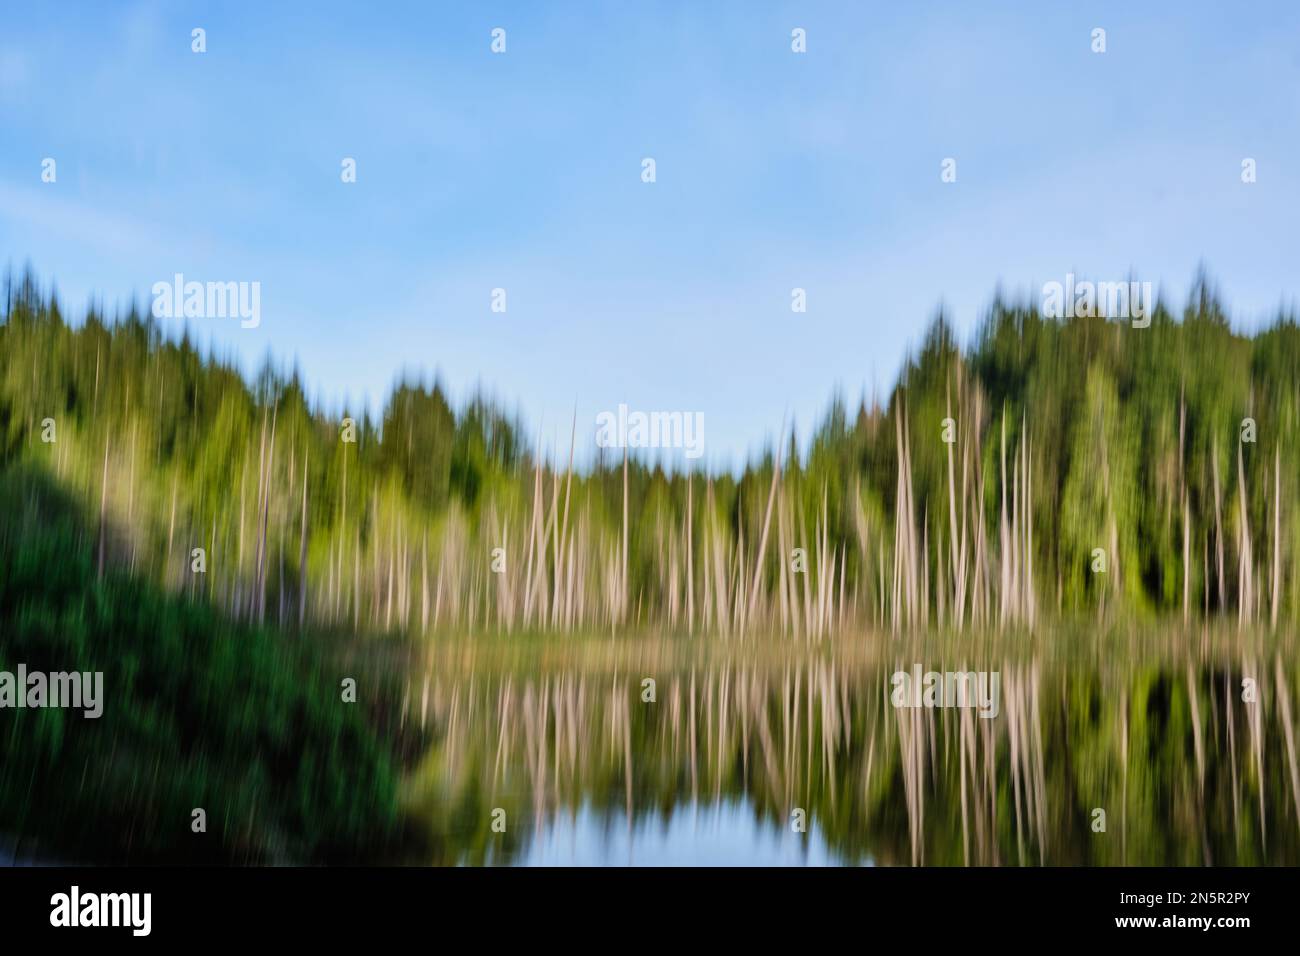 Les arbres et leurs réflexions au lac Katherine, sur la Sunshine Coast de la Colombie-Britannique, sont flous par le mouvement intentionnel de caméra (ICM). Banque D'Images